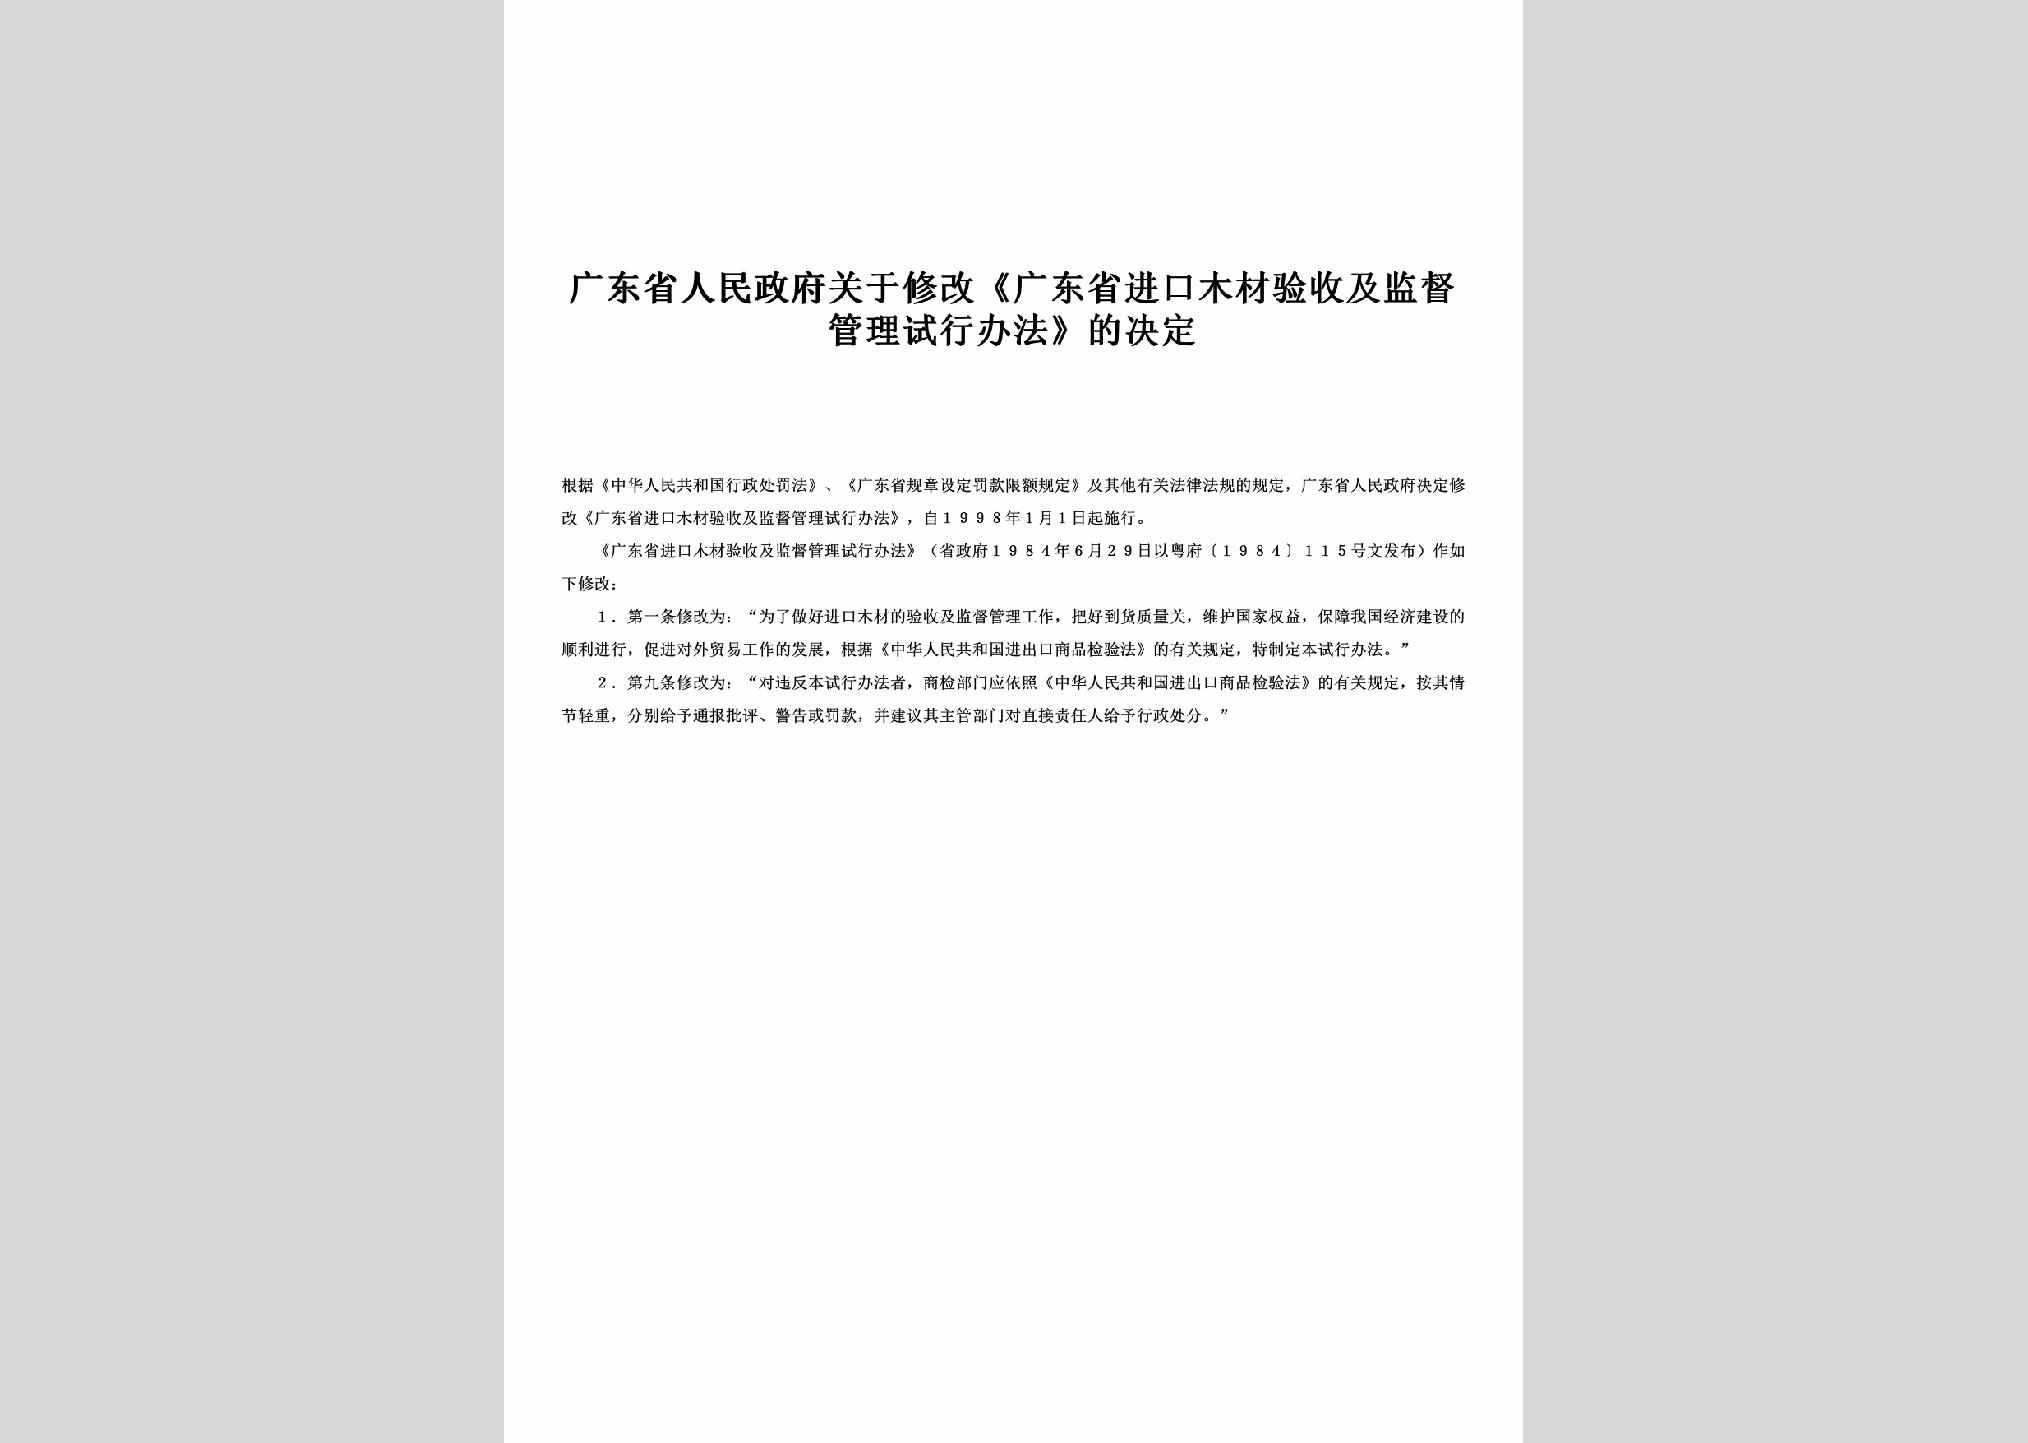 粤府[1984]115号：关于修改《广东省进口木材验收及监督管理试行办法》的决定